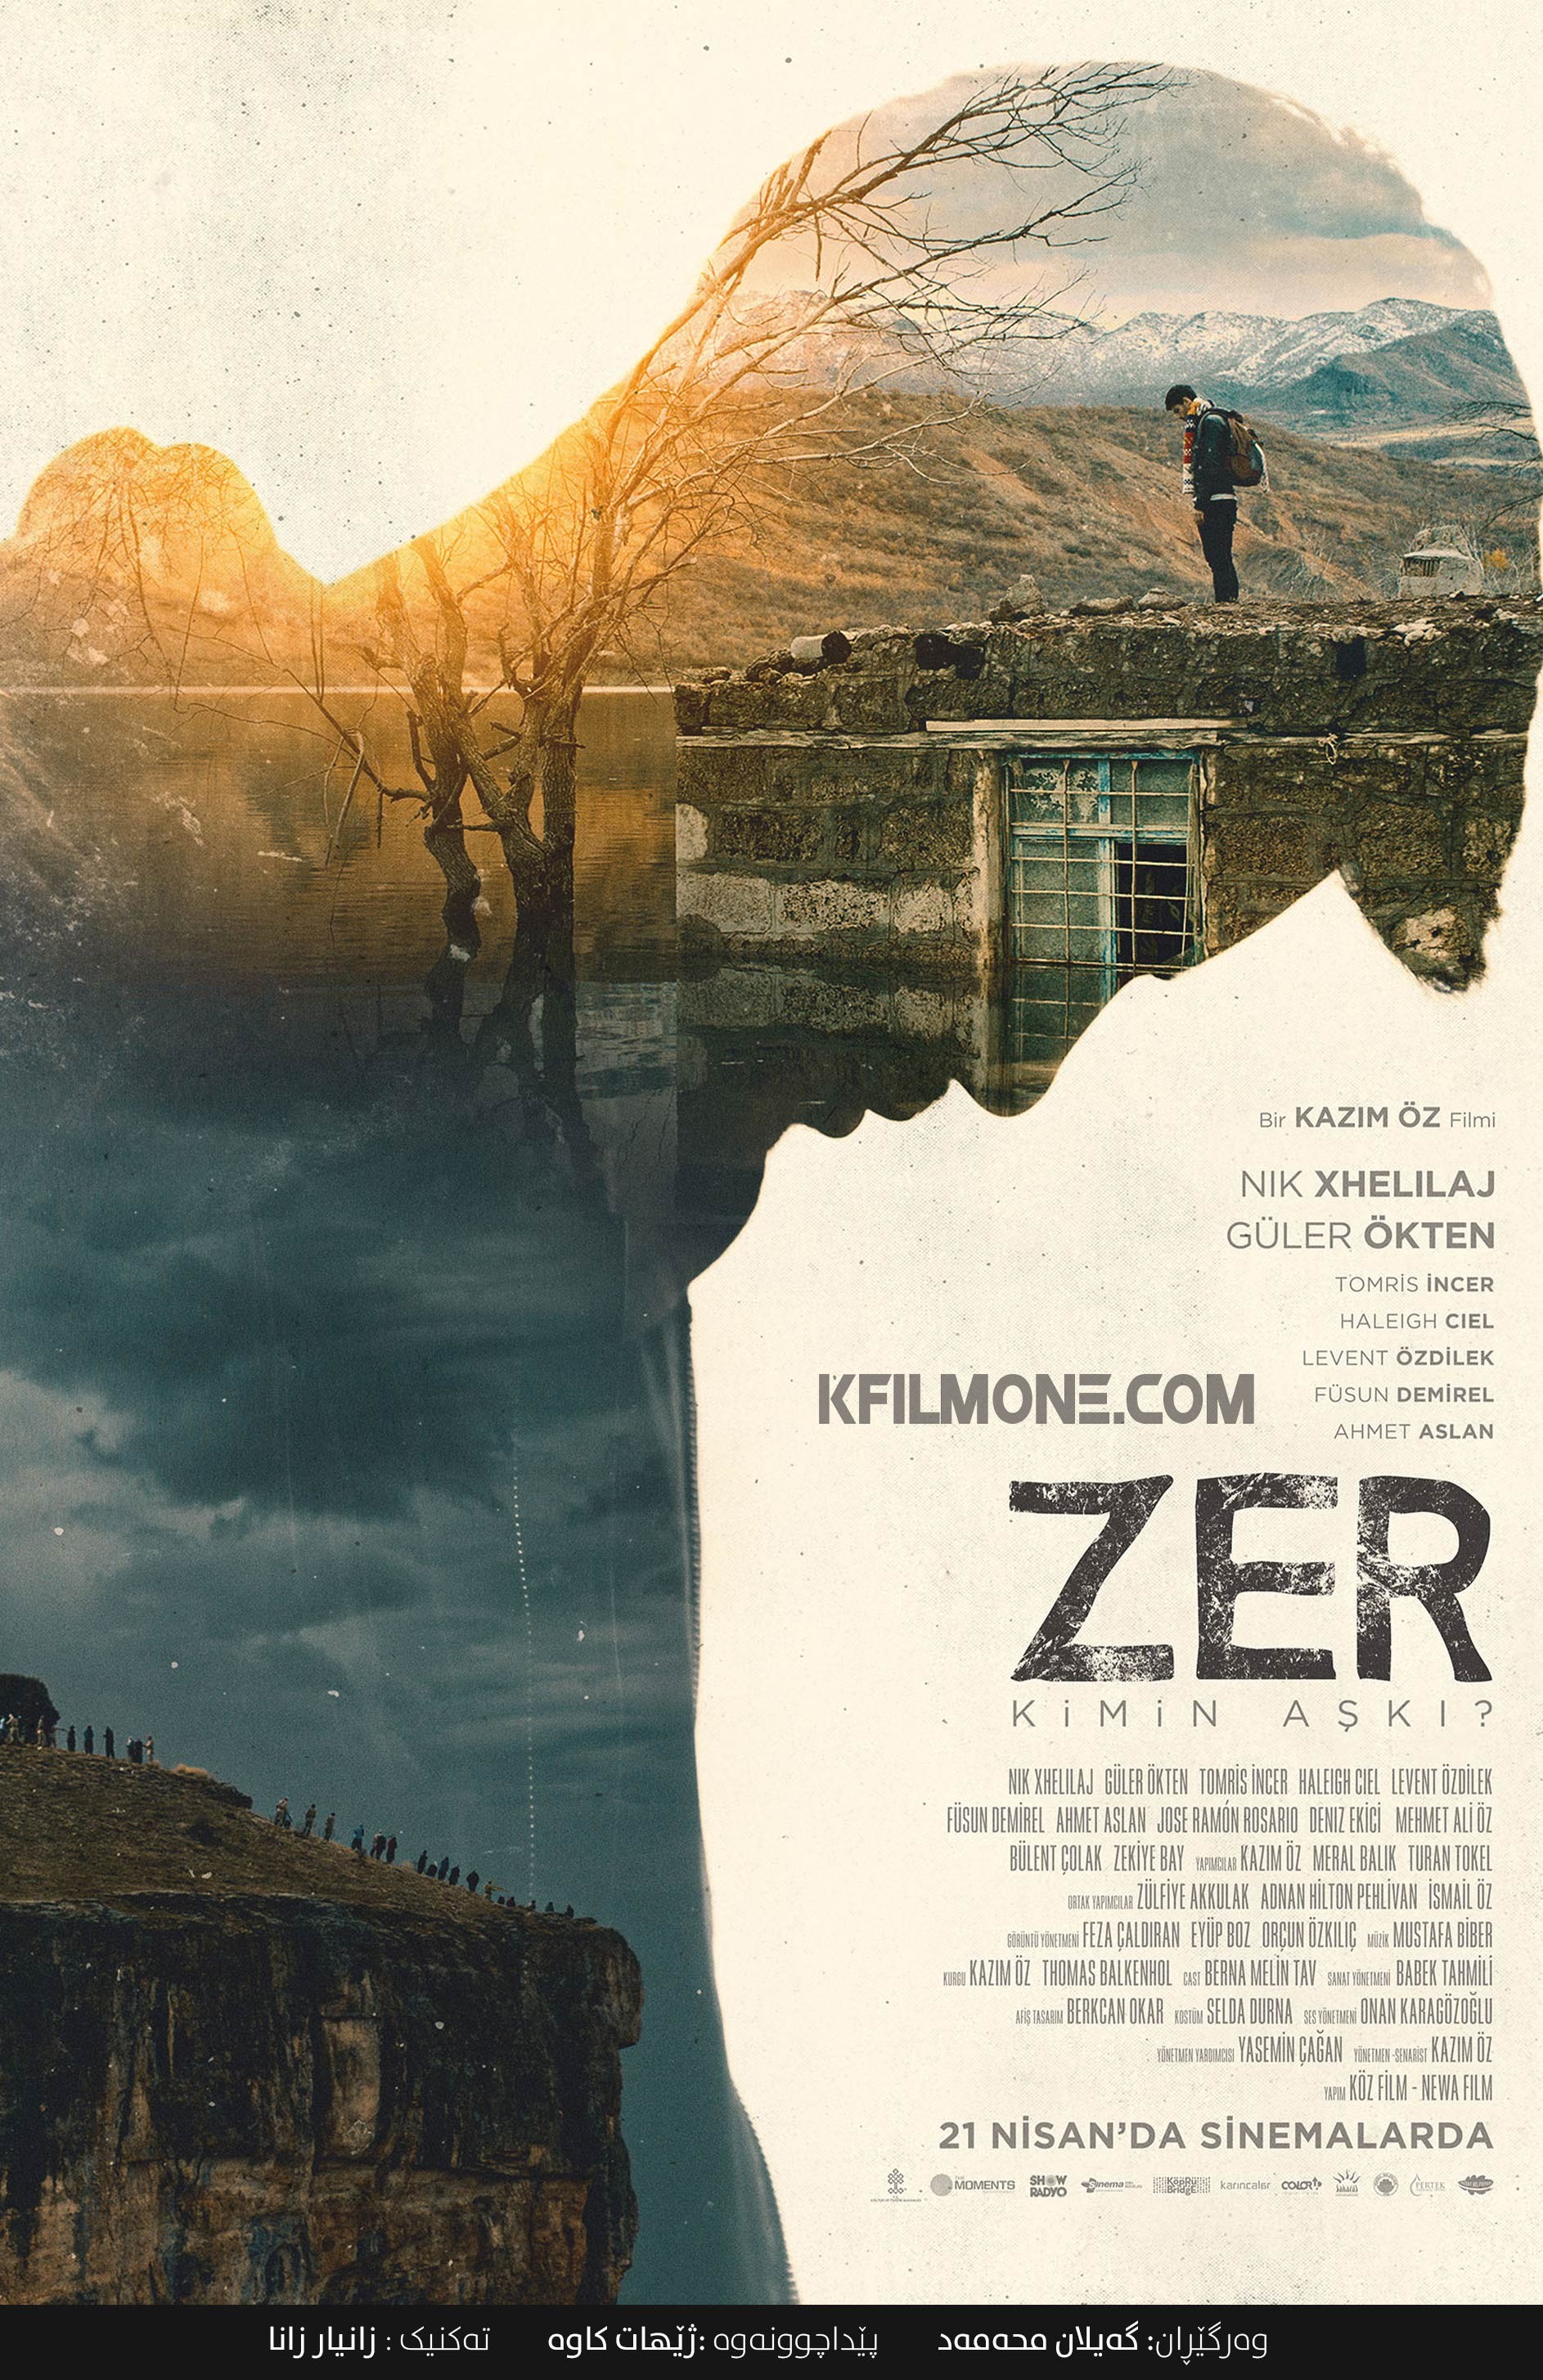 Zer (2017)